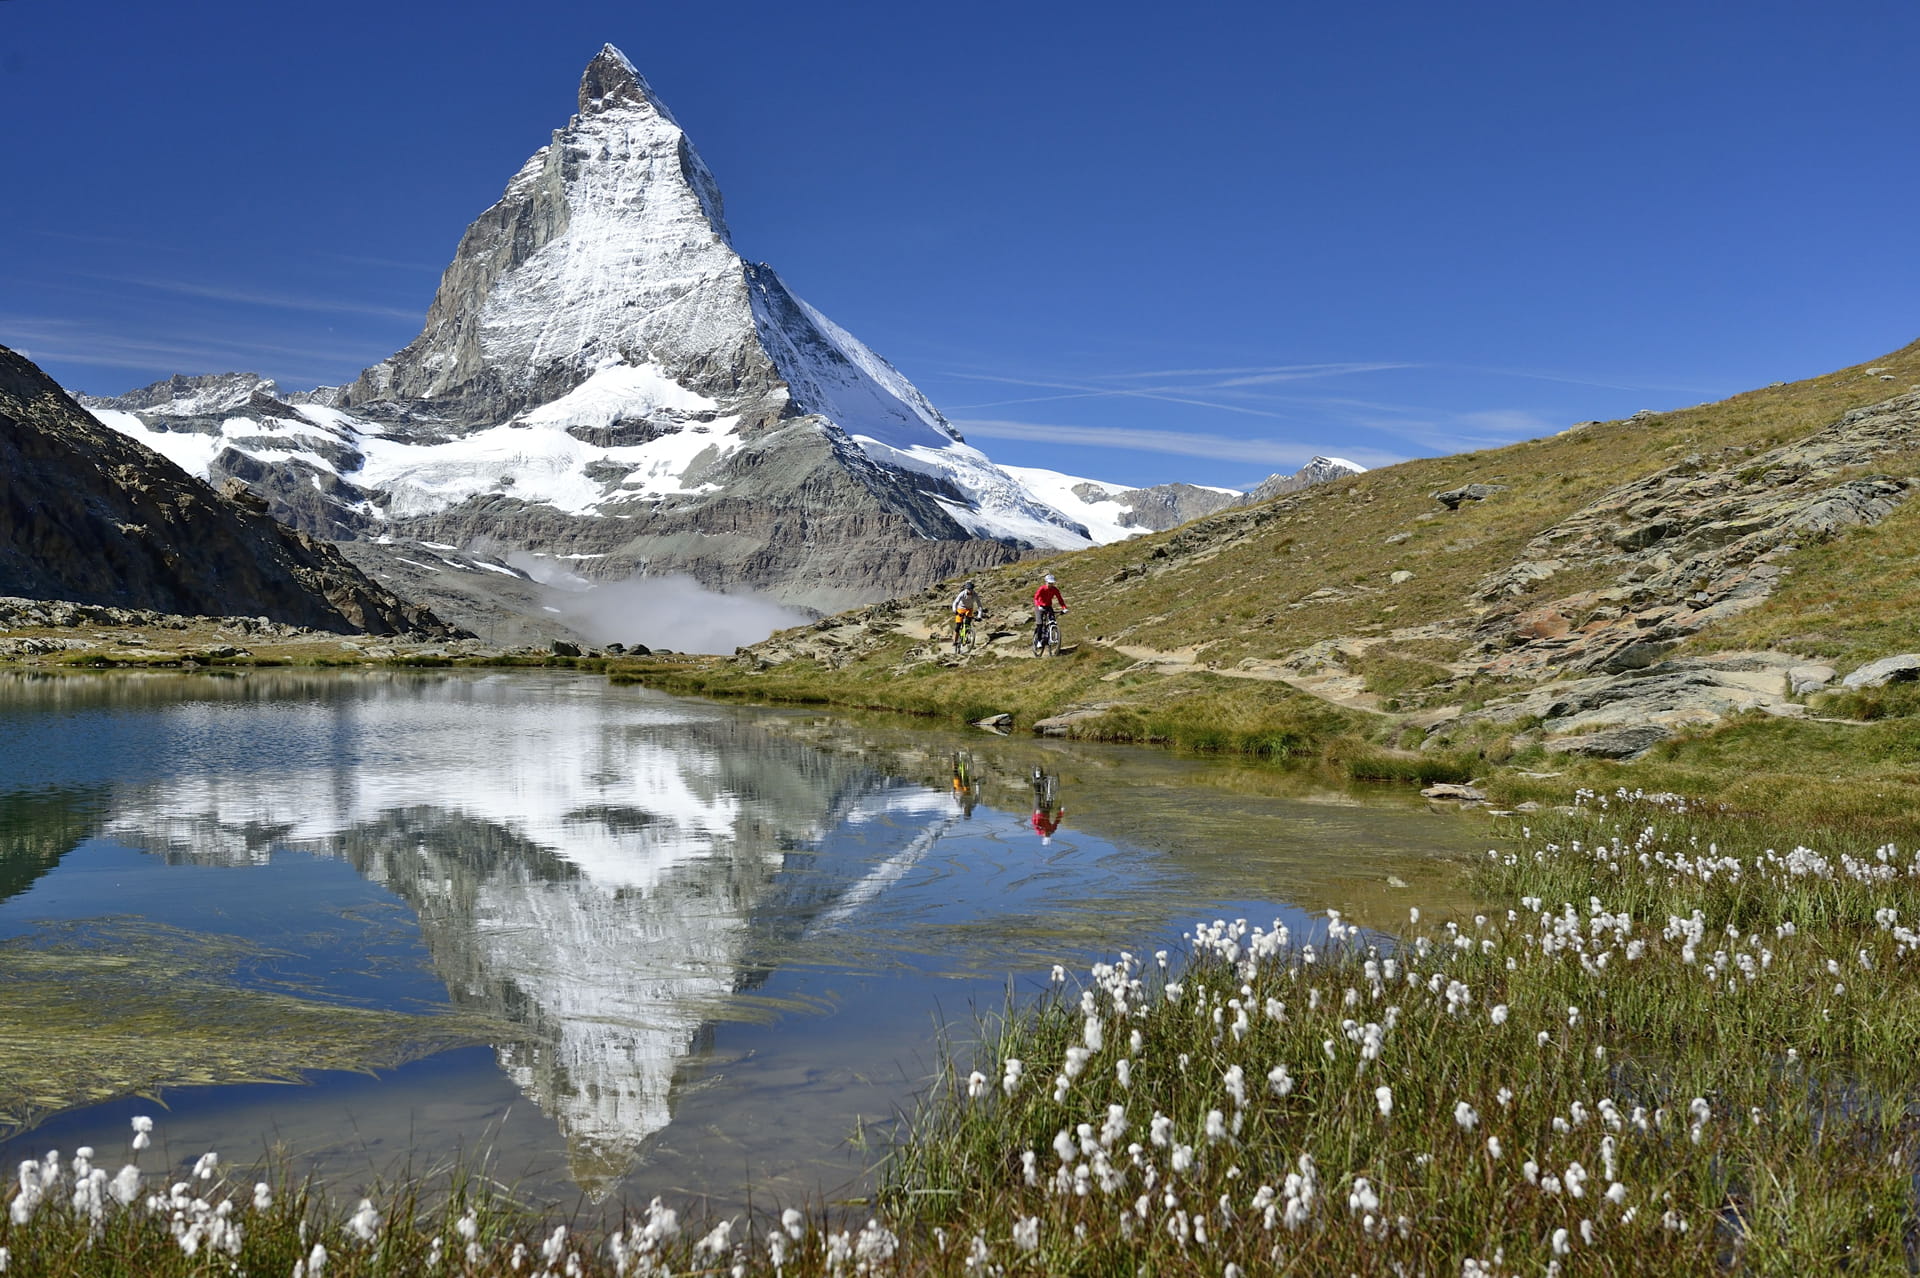 Mit der ErlebnisCard geniessen Sie freie Fahrt auf 728 km Bahn- und Busstrecken. Wie wär's zum Beispiel mit einem Ausflug zum Riffelsee bei Zermatt?